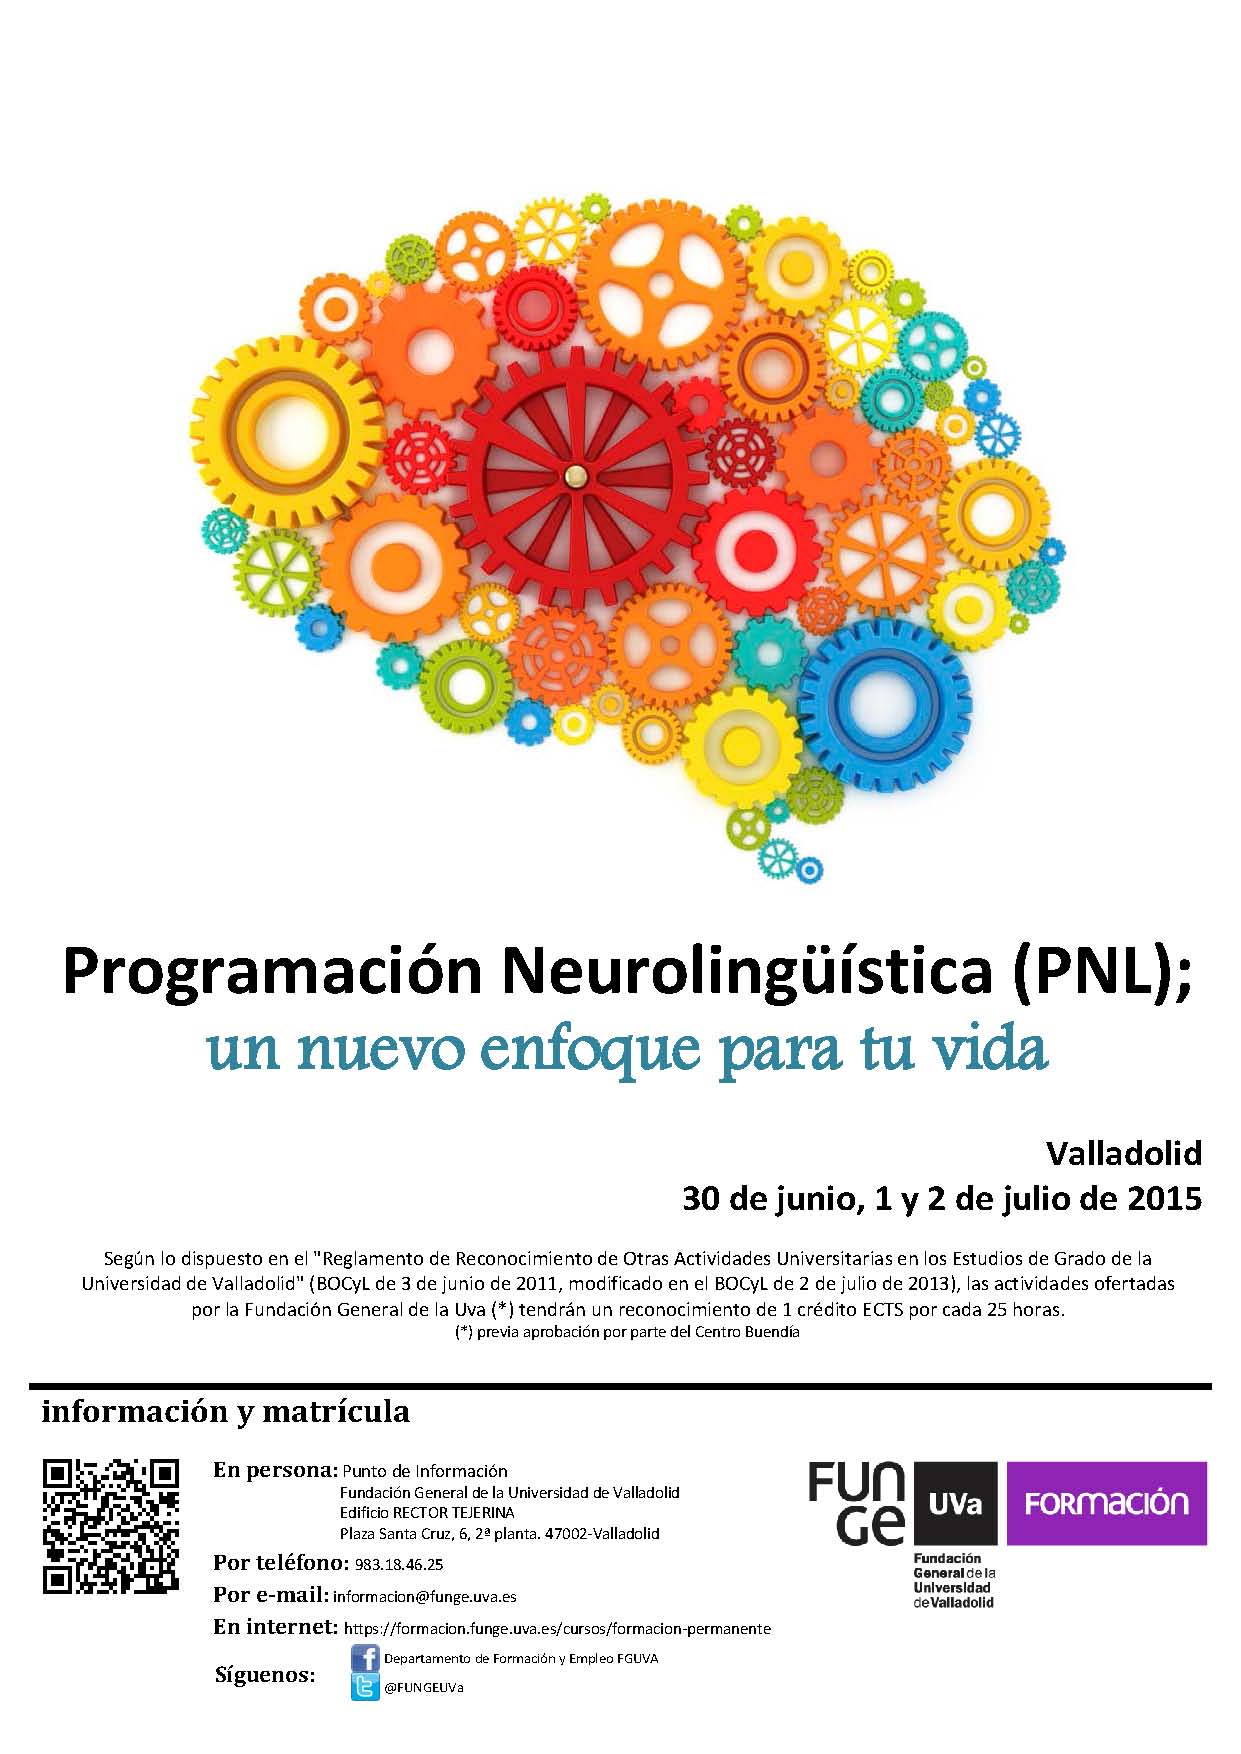 `Curso Programación Neurolingüística ´ organizado por Funge